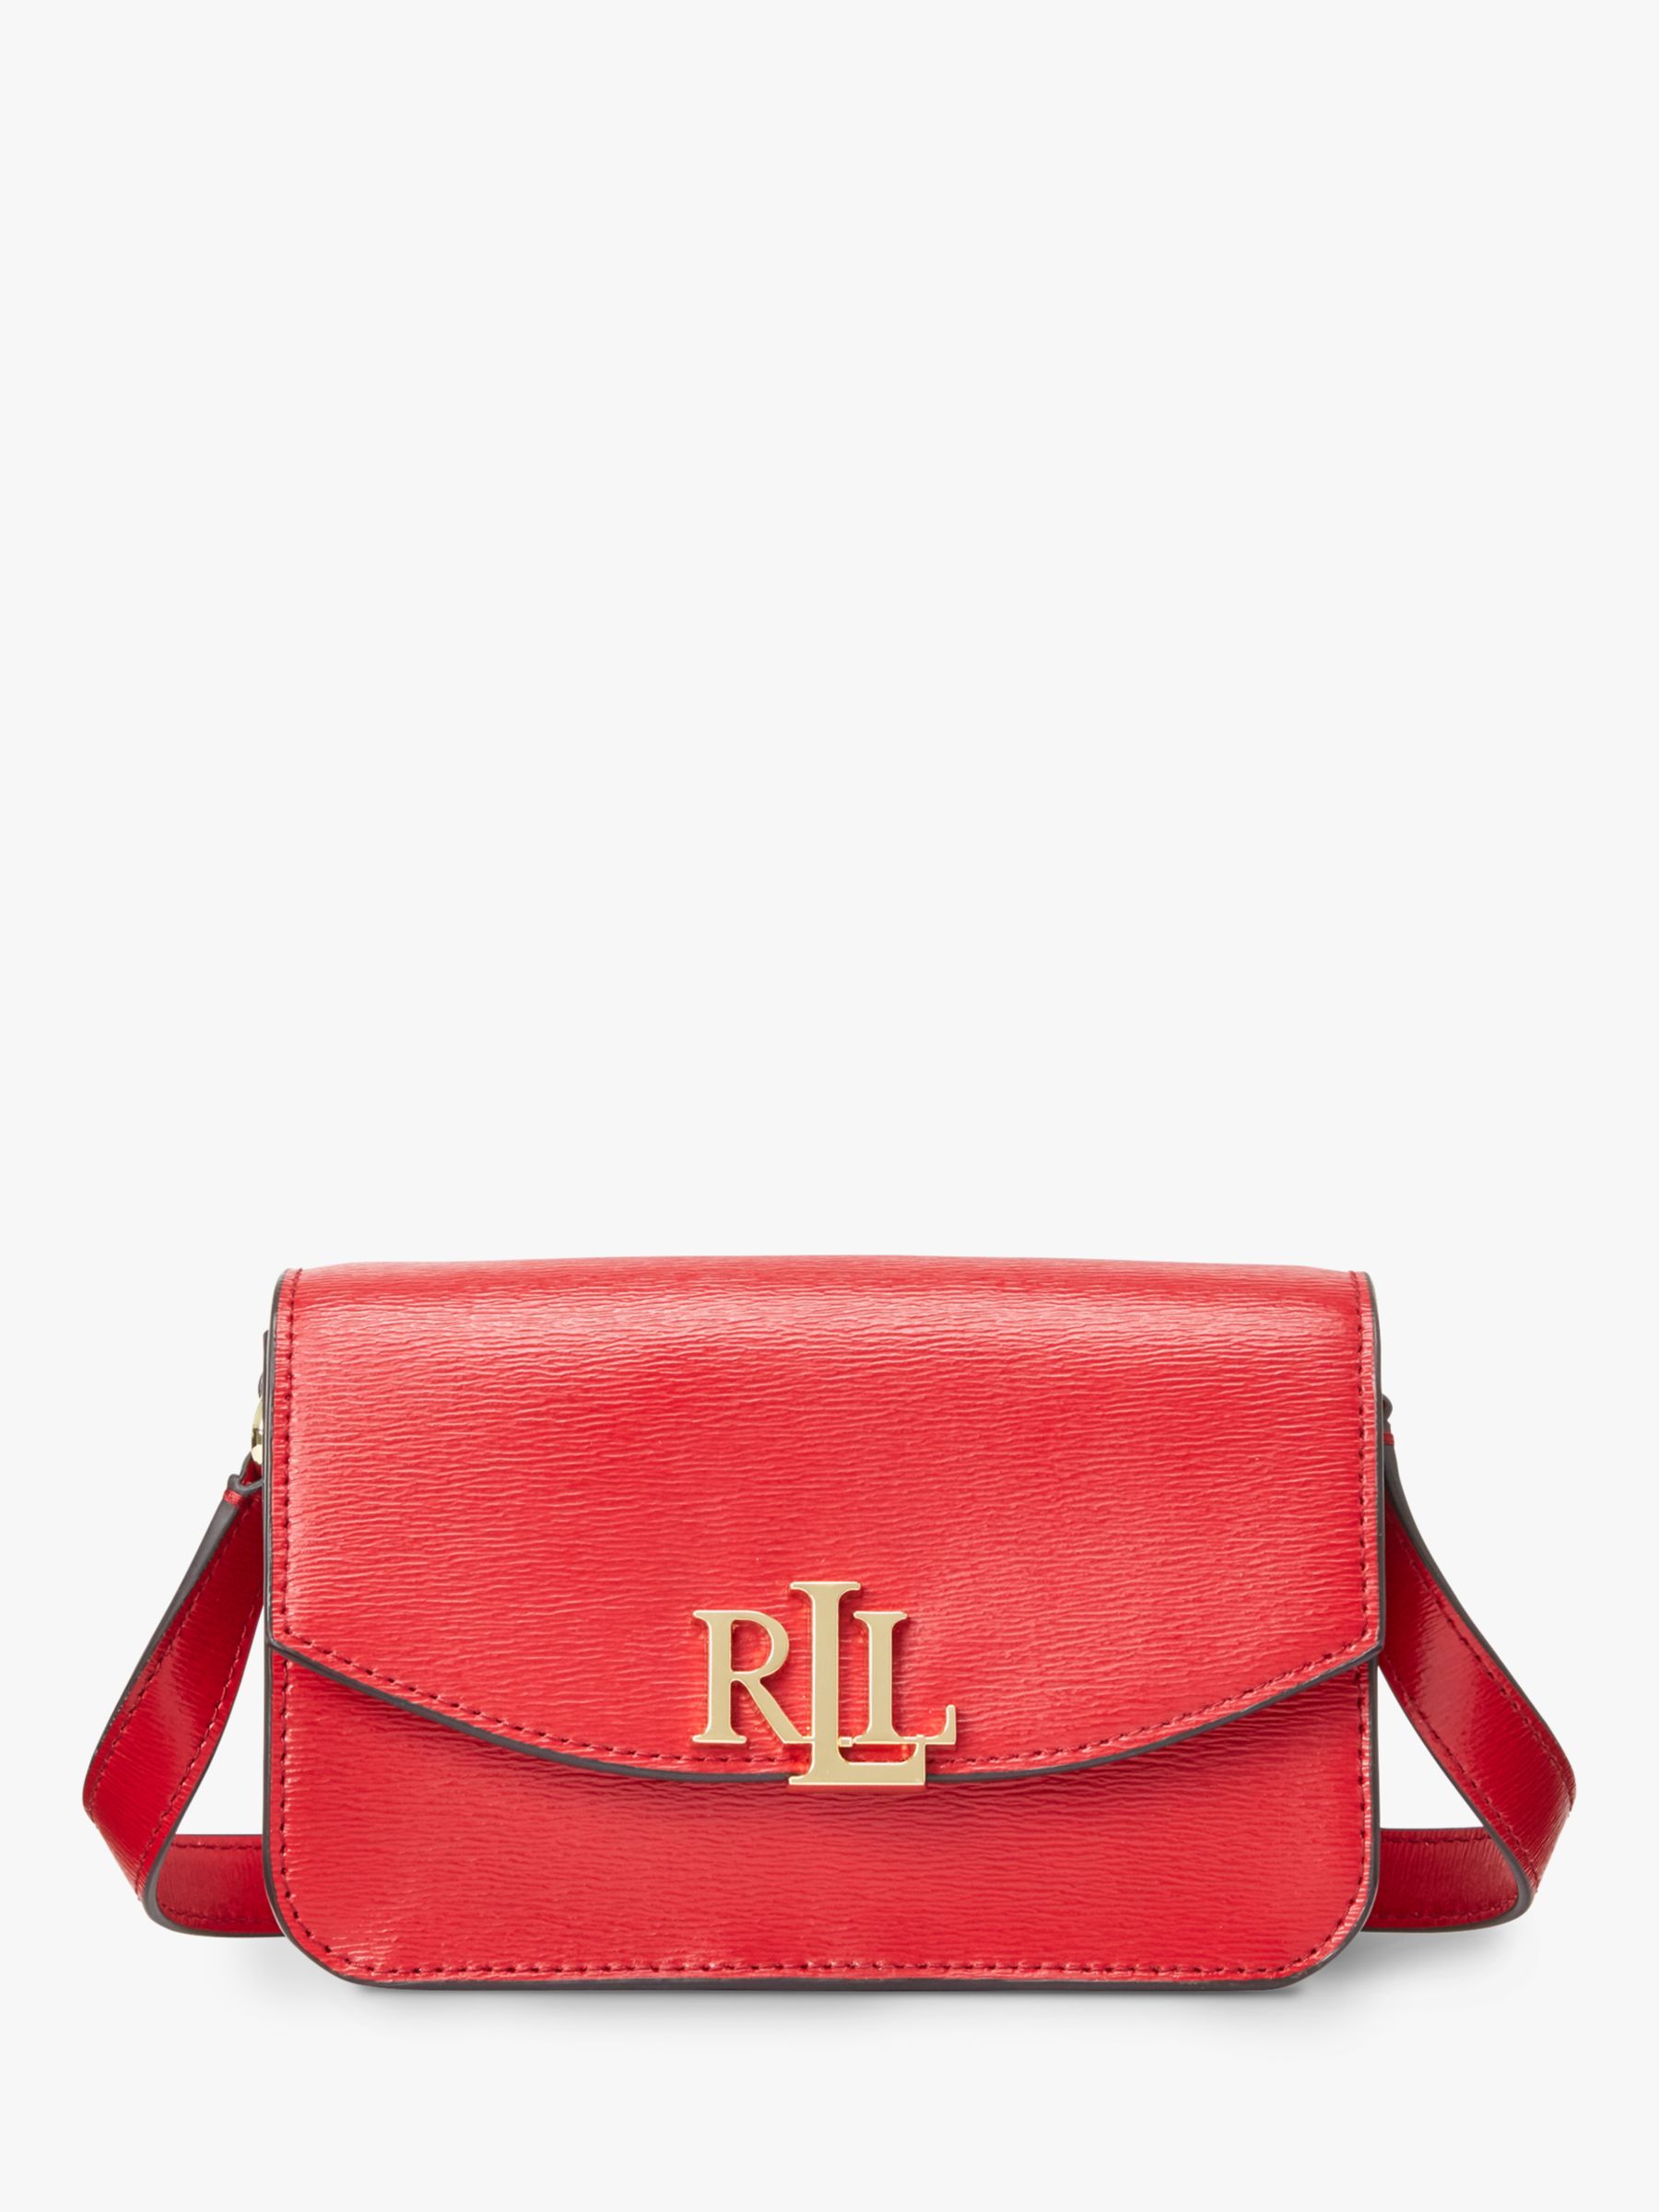 Lauren Ralph Lauren Elmswood Madison 18 Leather Cross Body Bag, Red